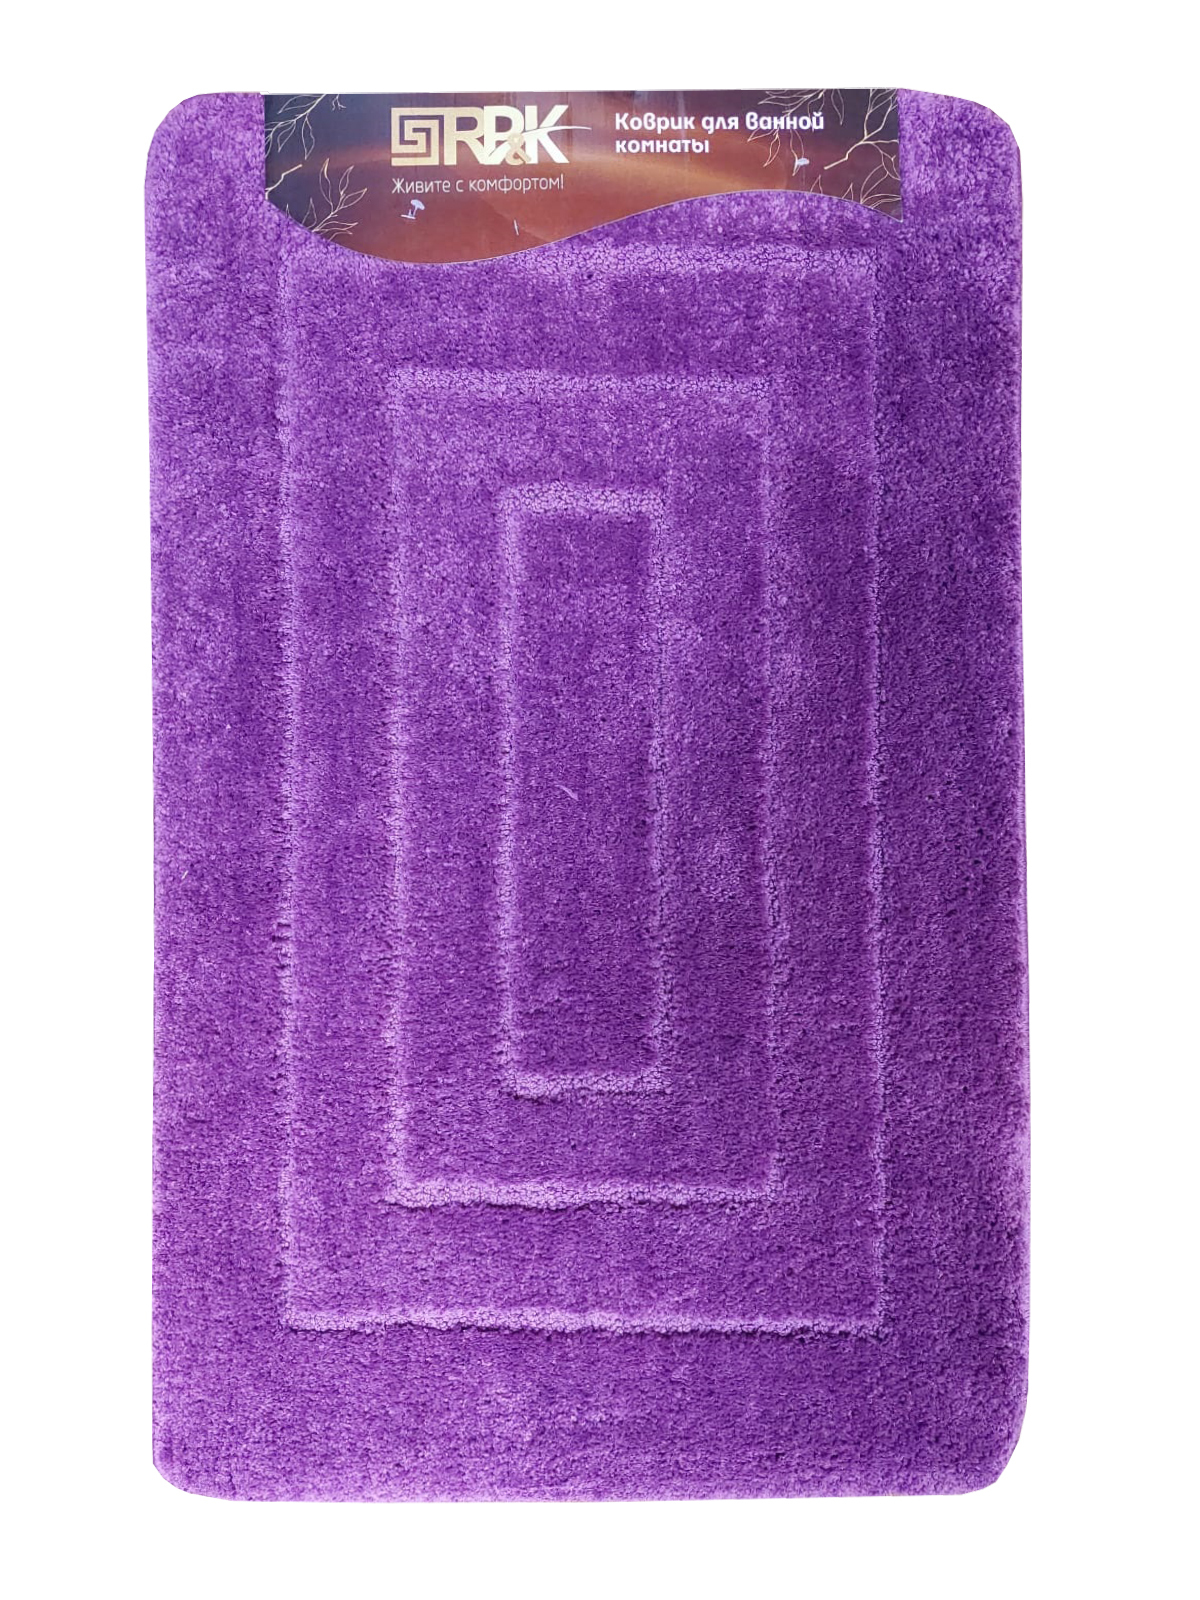 Коврик для ванной PR & K Polystar 80х120см из микрофибры фиолетовый